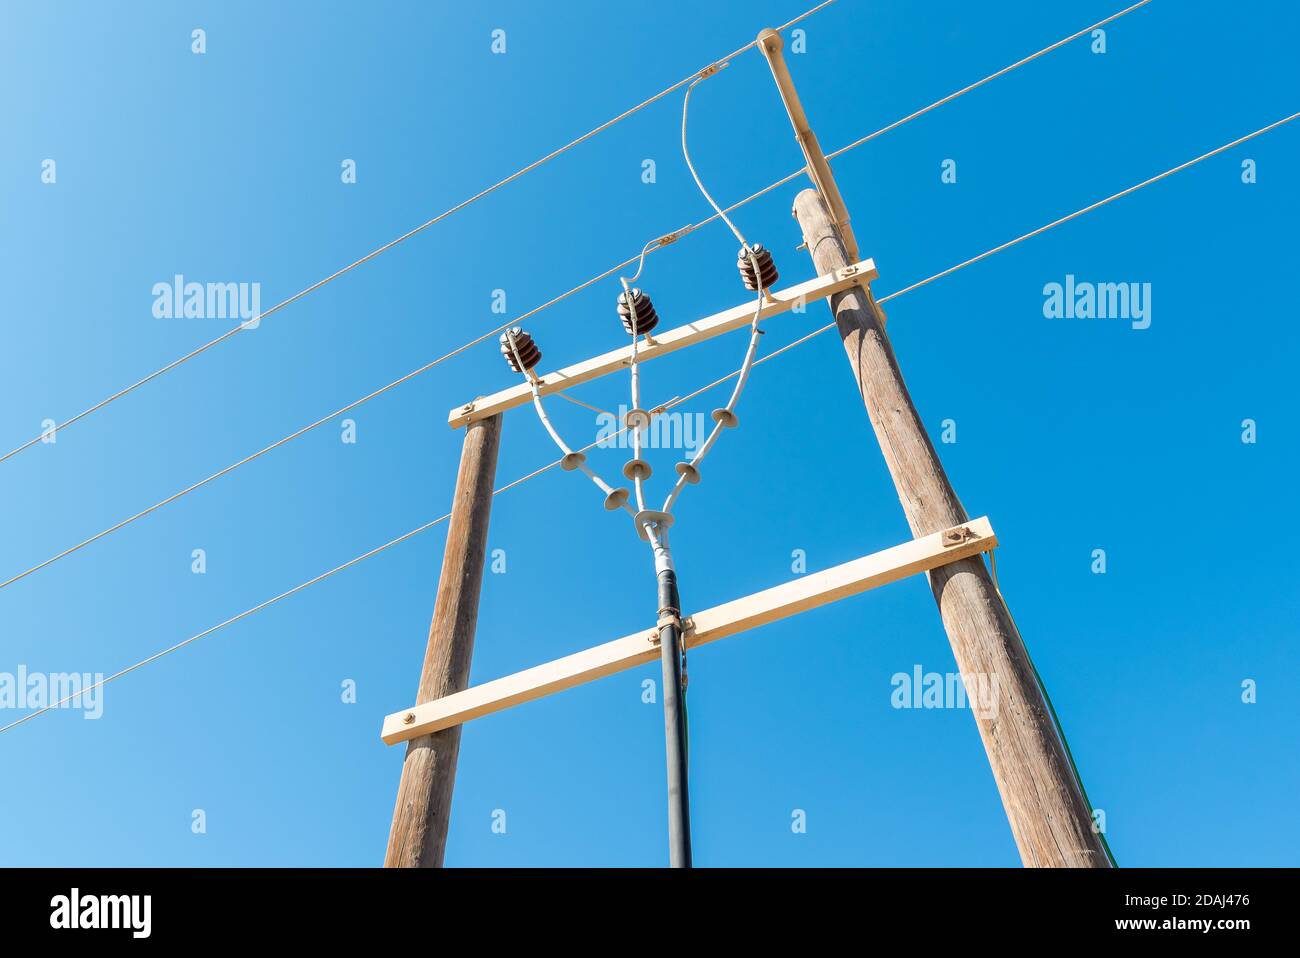 Polo elettrico in legno con fili elettrici ad alta tensione contro cielo blu Foto Stock